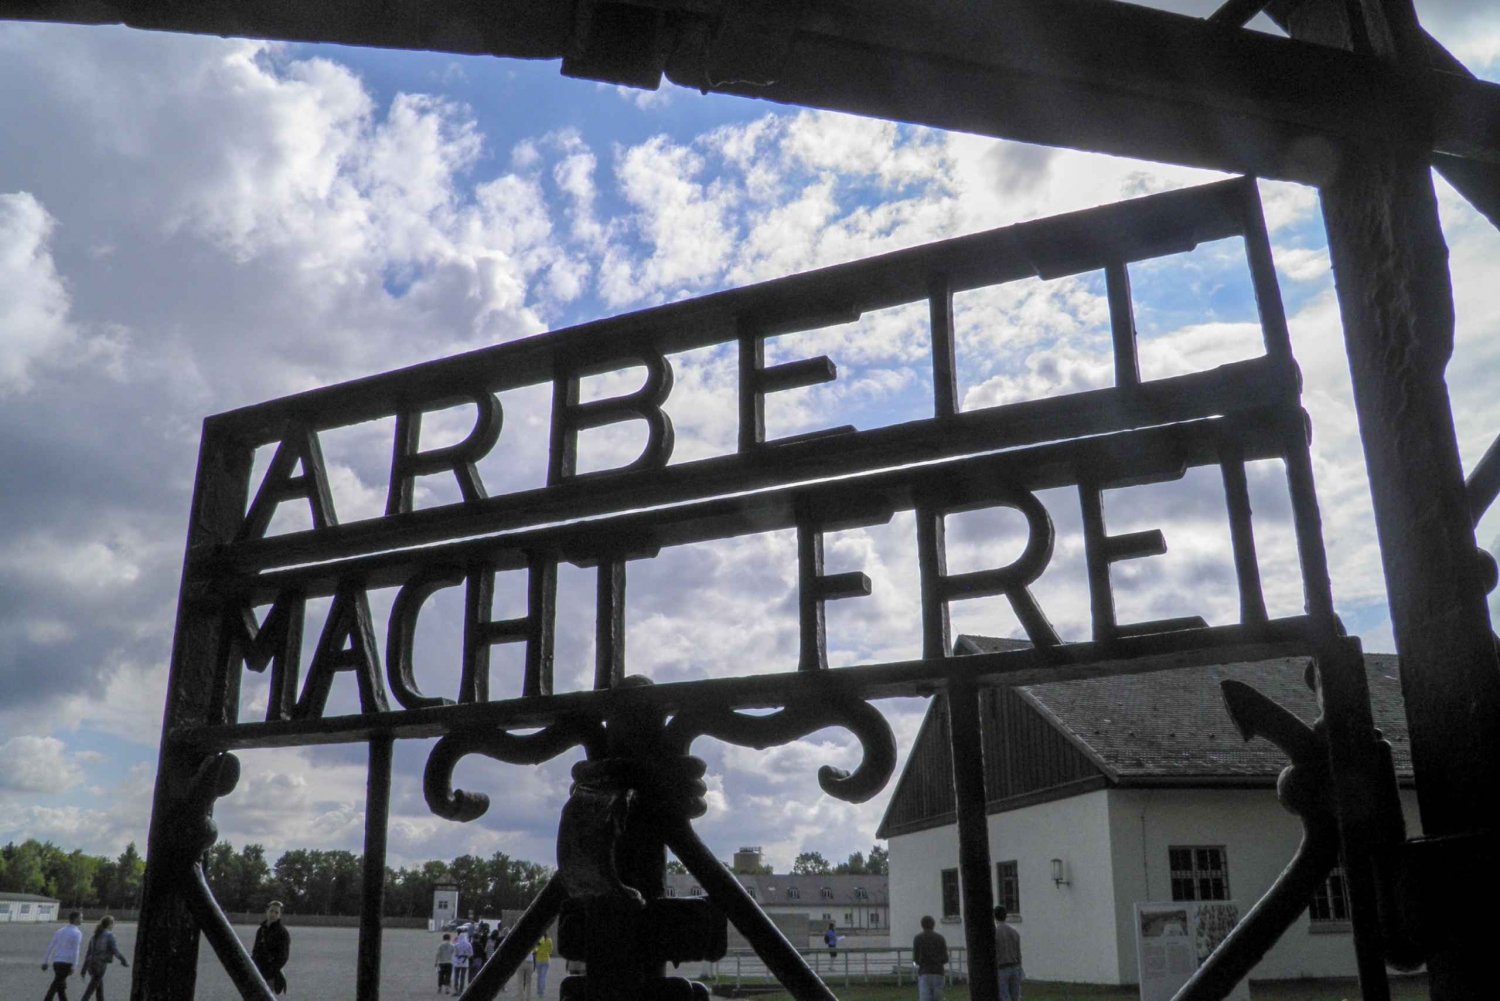 Dachau Memorial Site Half-Day Trip